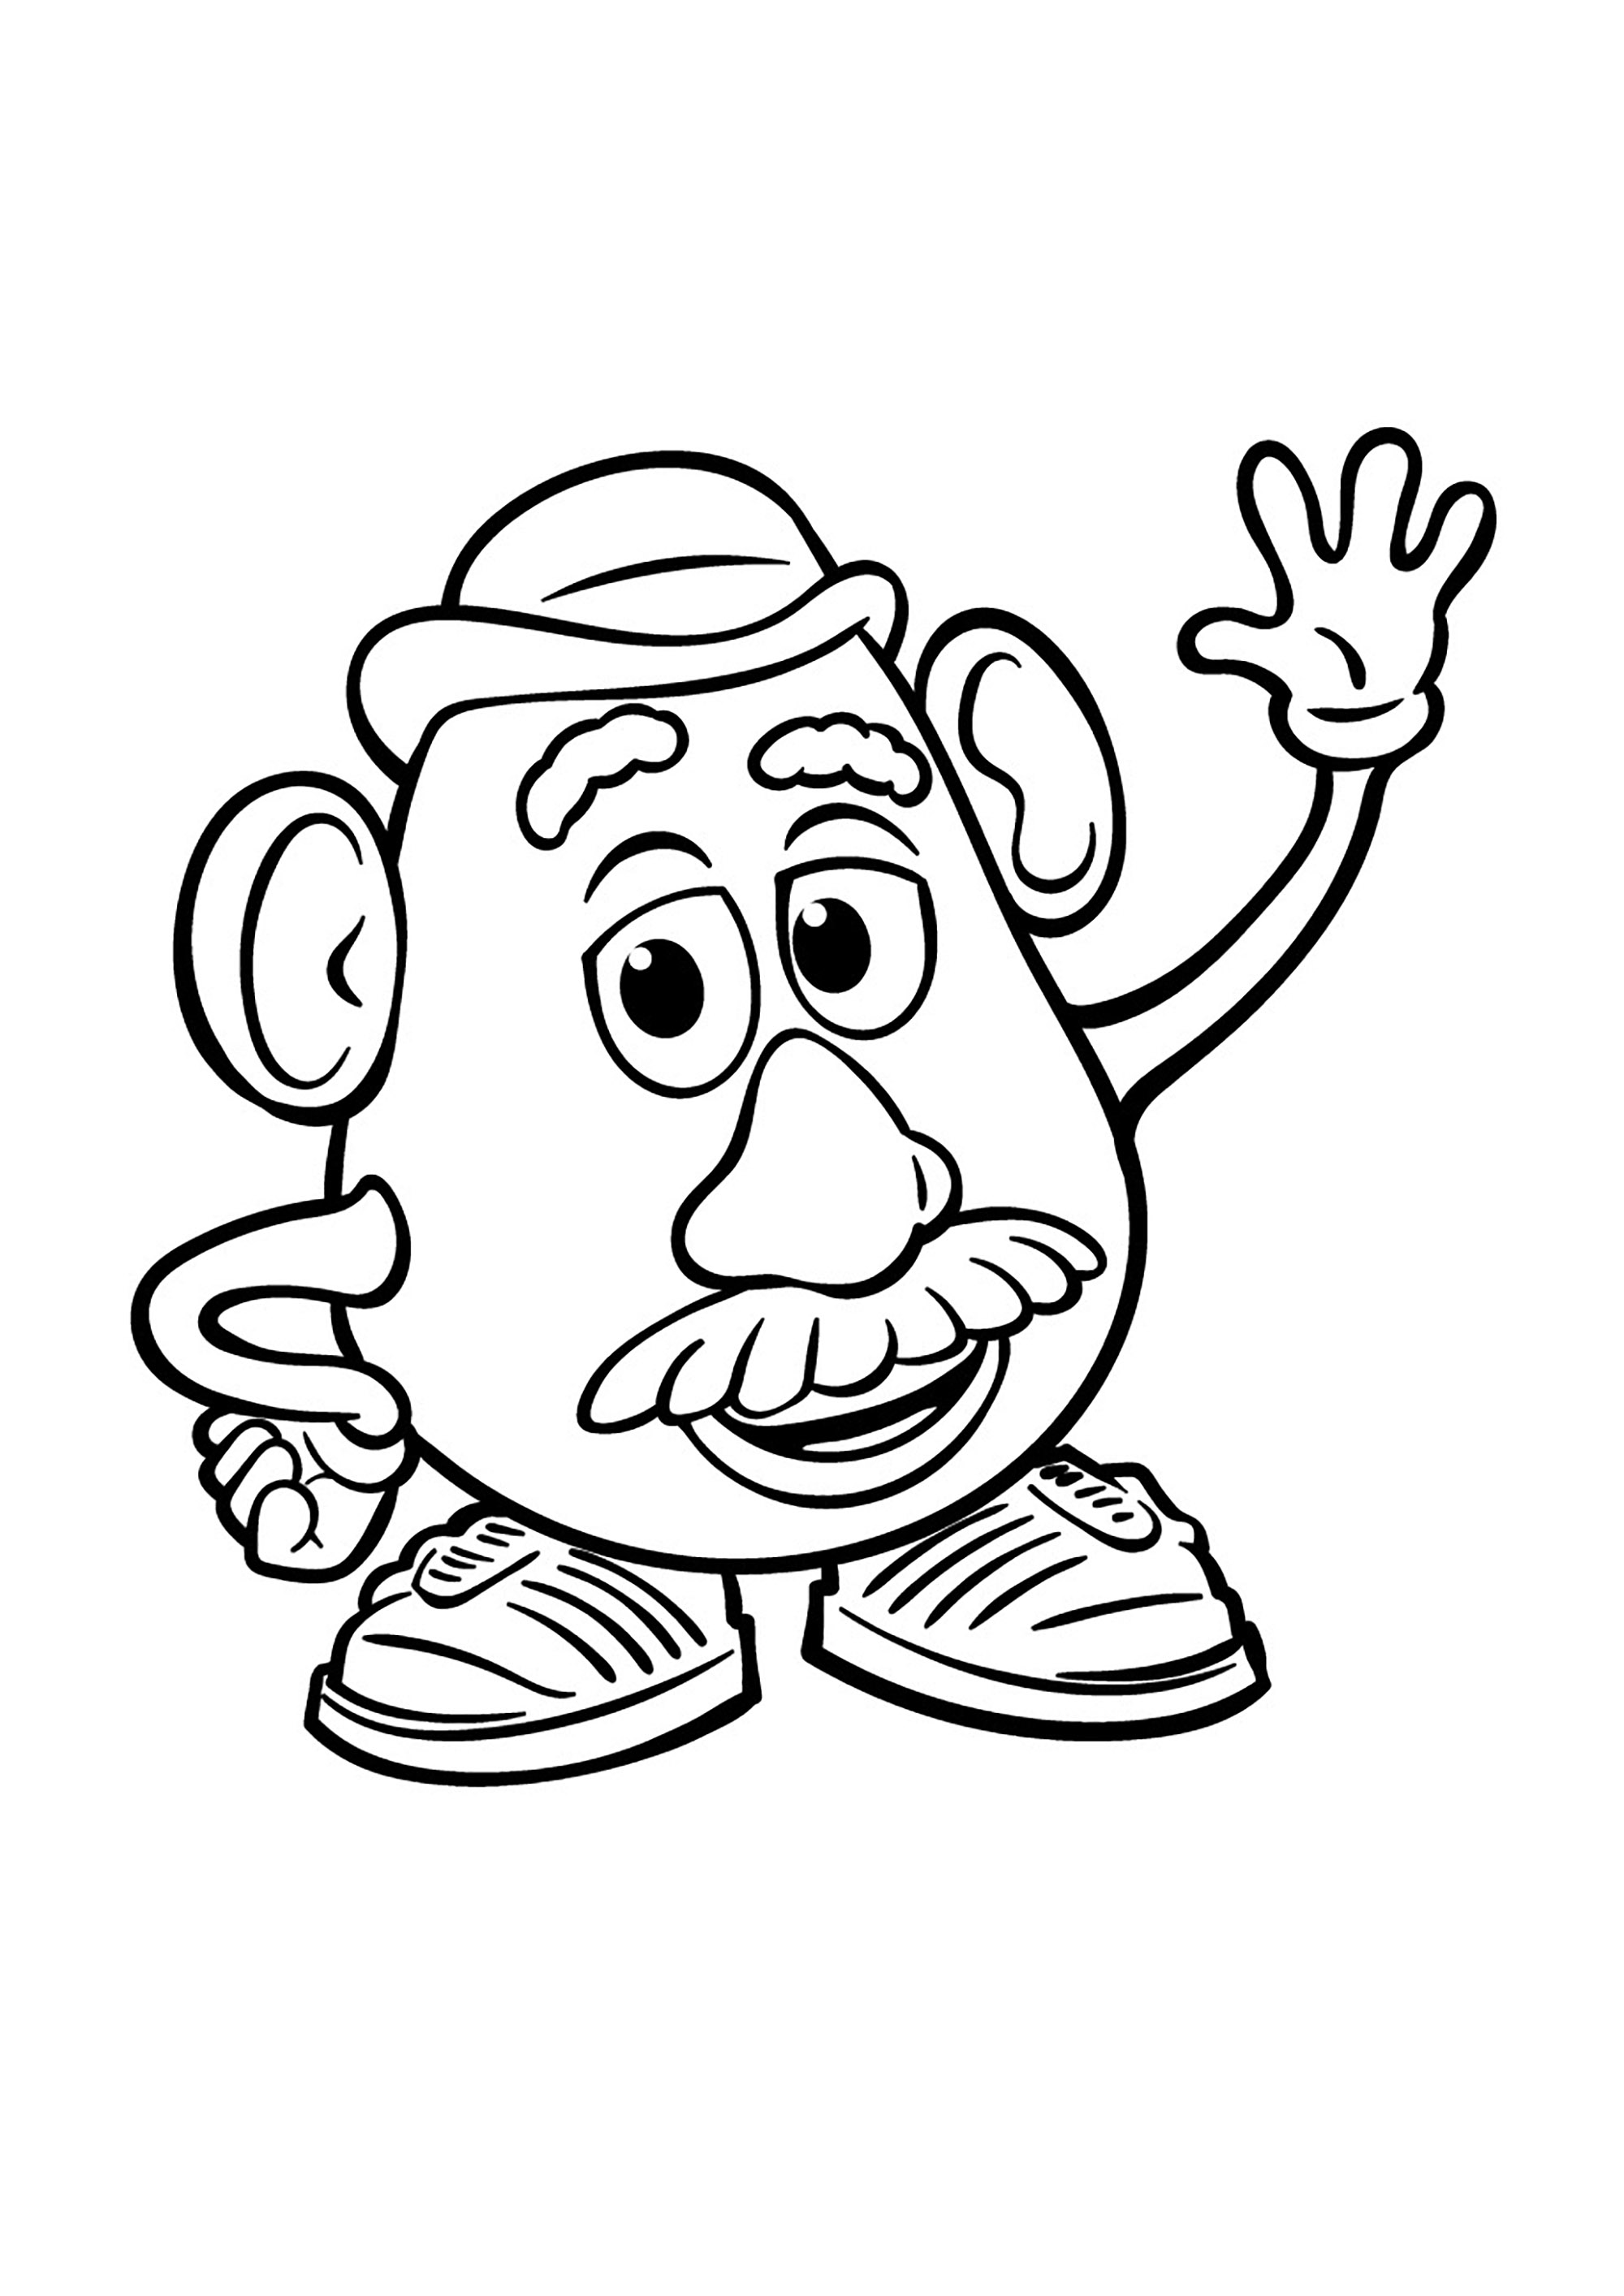 Mr Potato Head, uno de los juguetes de Andy en Toy Story. Mr Potato se inventó en 1949. El objetivo de su creador (George Lerner) era sencillo: hacer que los niños adoraran las verduras. Para ello, creó un conjunto de 28 piezas de plástico (nariz, brazos, piernas, etc.) que se distribuyeron inicialmente en cajas de cereales, sin el cuerpo en forma de patata.